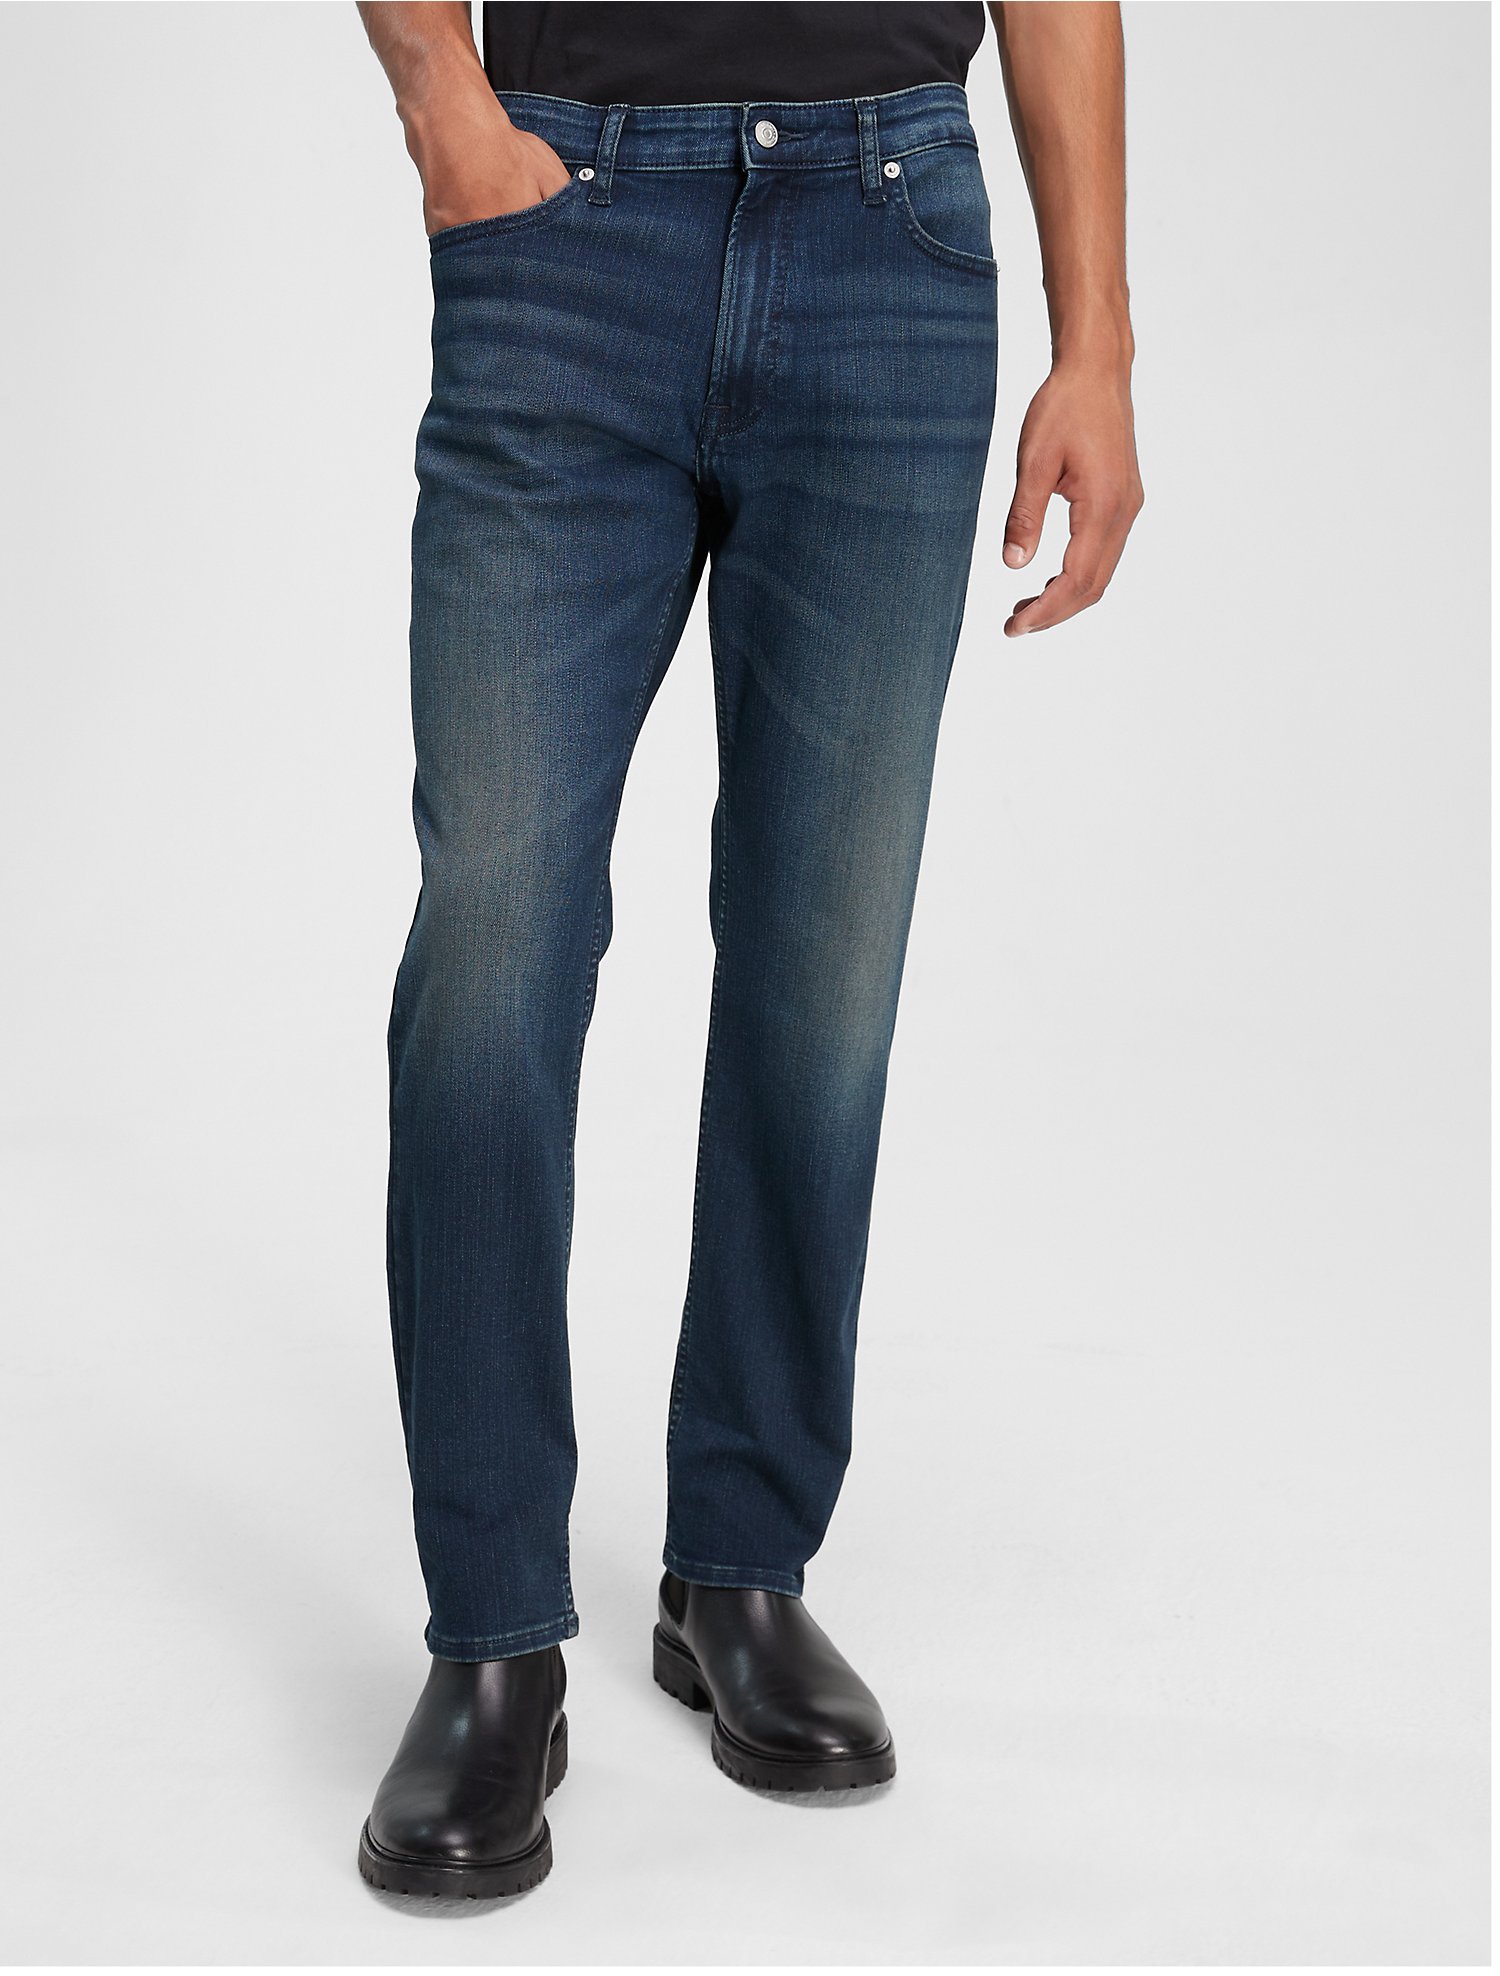 sanger fodspor plantageejer Slim Fit Jeans | Calvin Klein